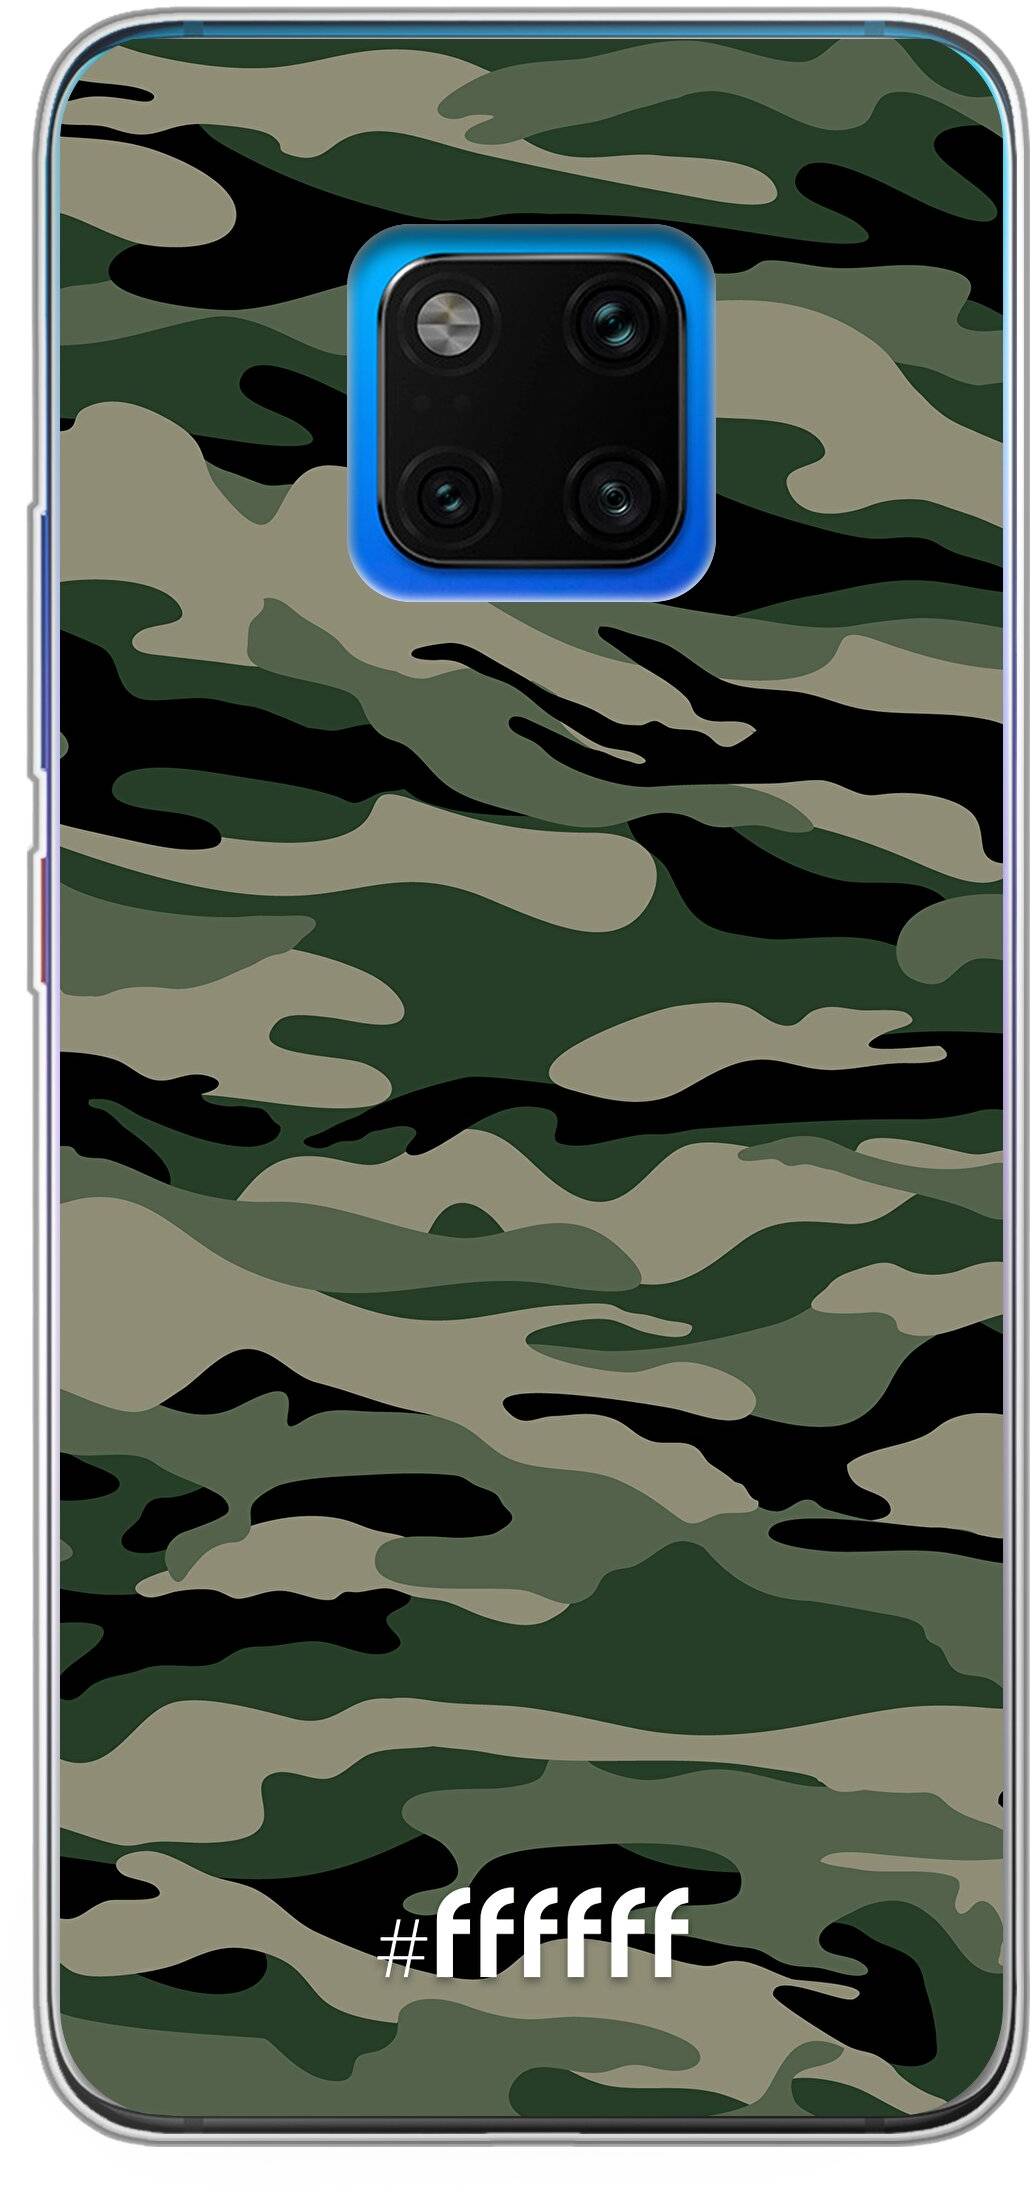 Woodland Camouflage Mate 20 Pro